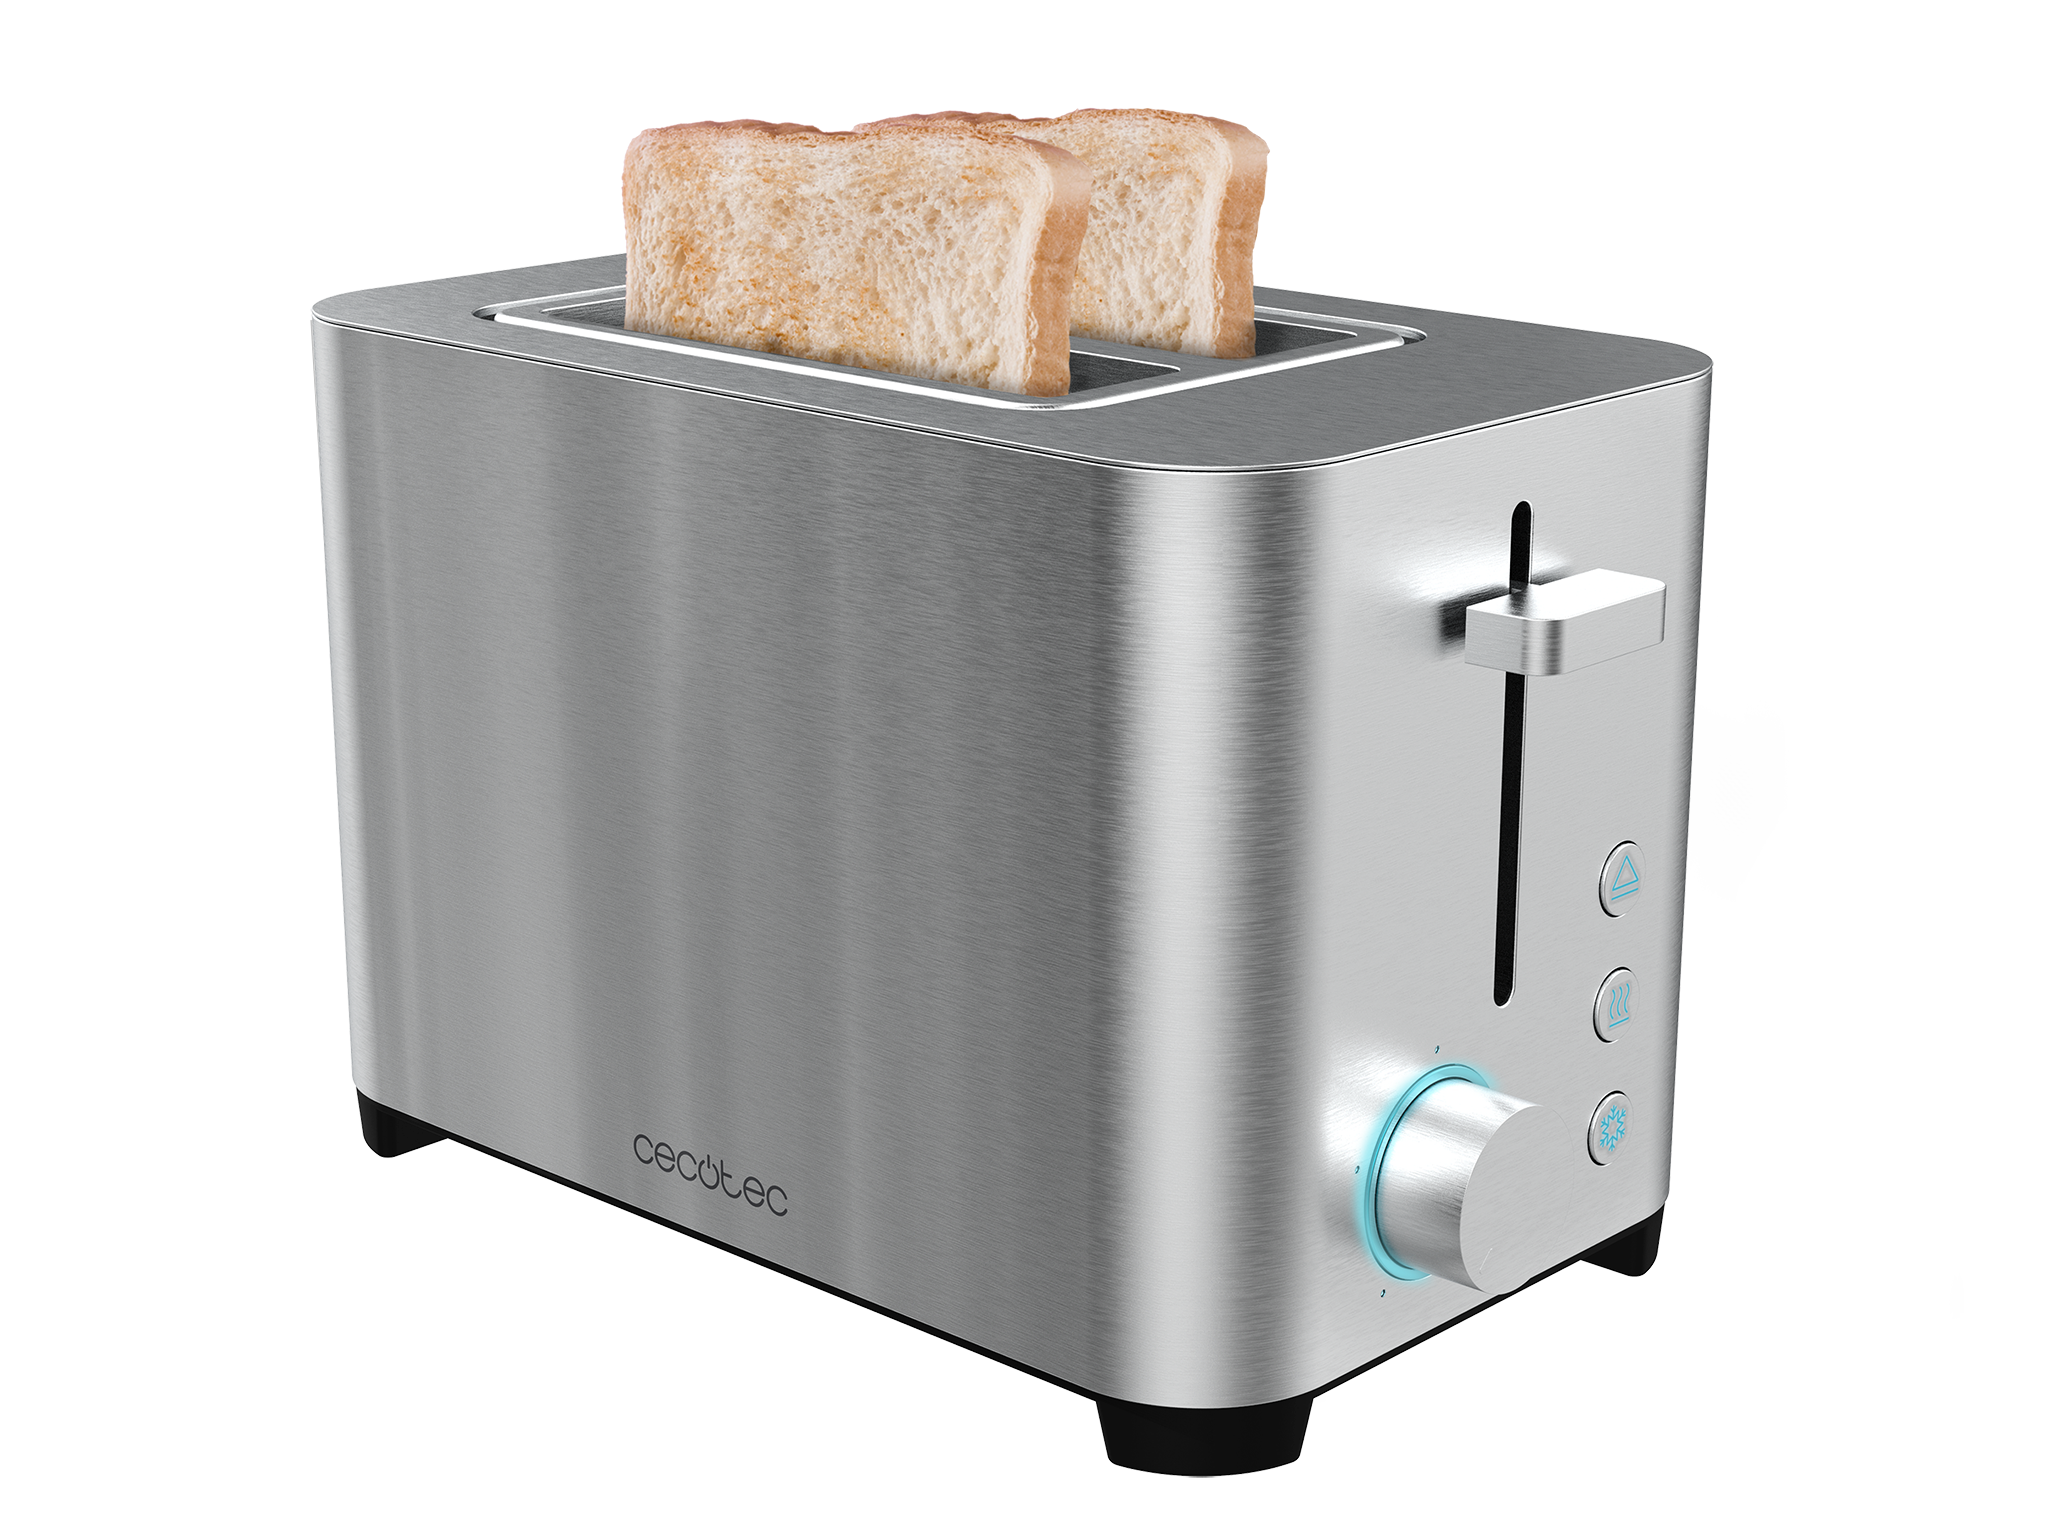 YummyToast Doppel-Toaster - Doppelter kurzer Schlitz, Edelstahl-Oberfläche, 850 Watt Leistung, 5 Leistungsstufen, zwei Funktionen, Krümelfach (Doppelter kurzer Schlitz)